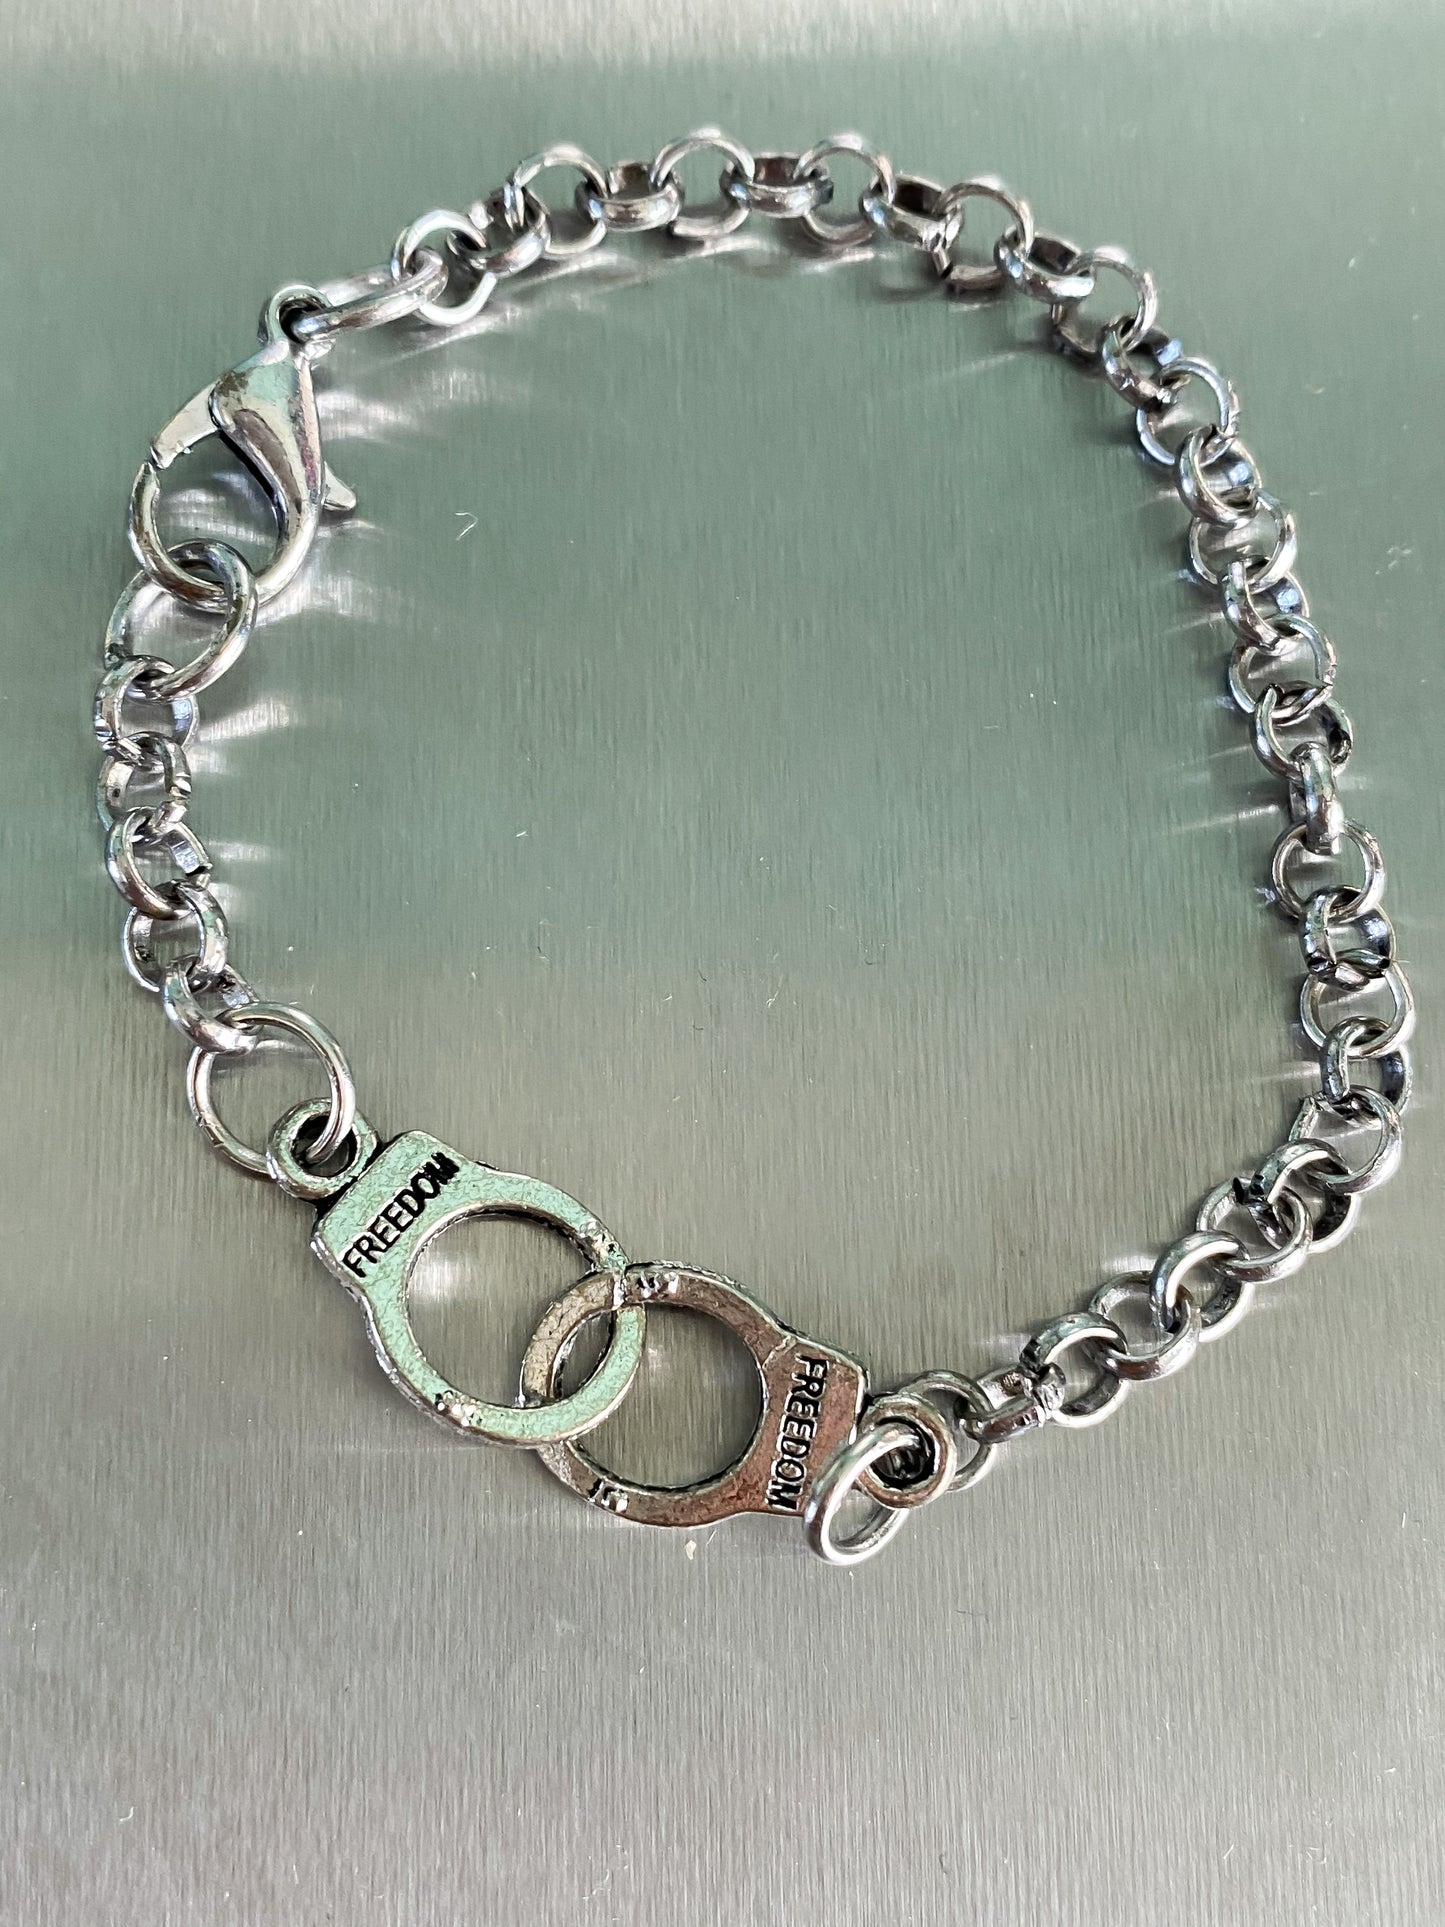 Freedom Handcuff Chain Bracelet in Silvertone Metal